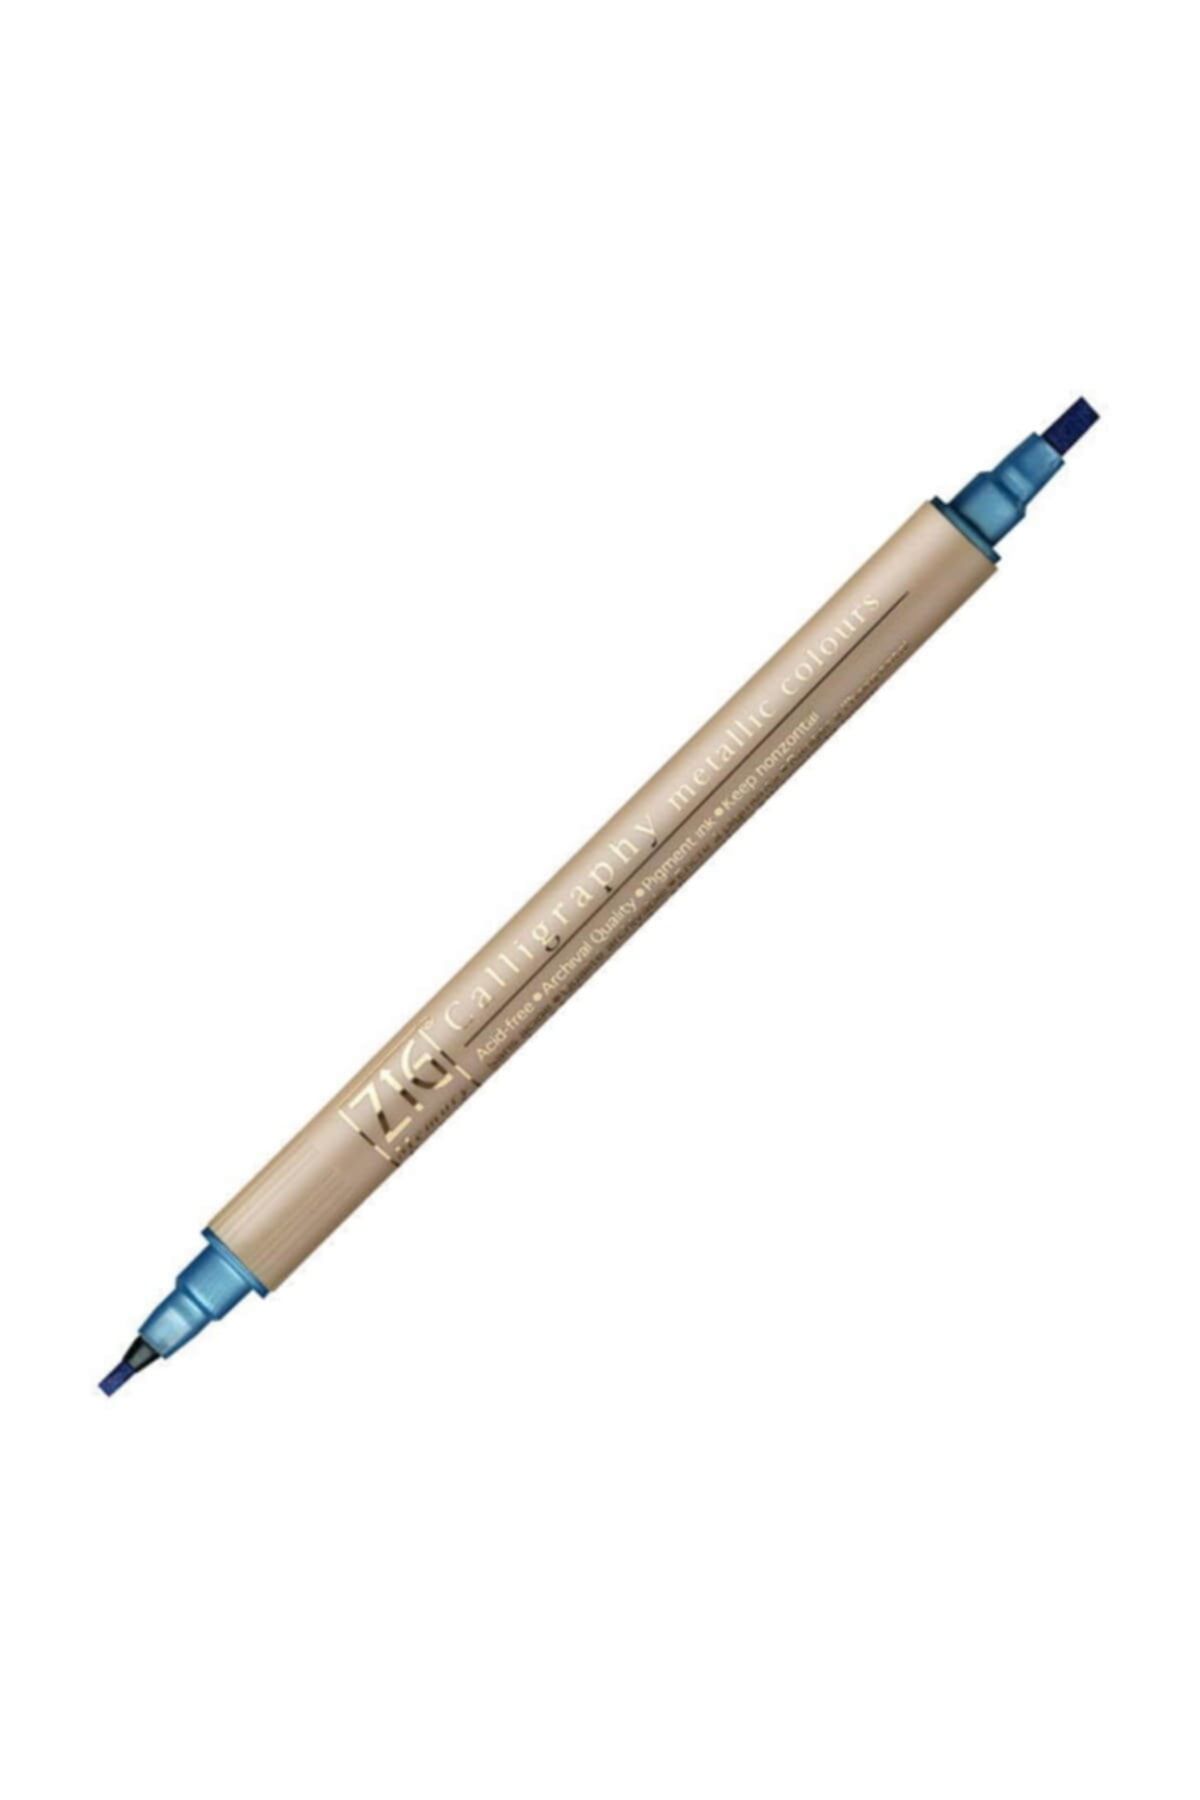 Zig Çift Uçlu Yaldızlı Kaligrafi Kalemi 2 Mm 3.5 Mm 125 Metallic Blue